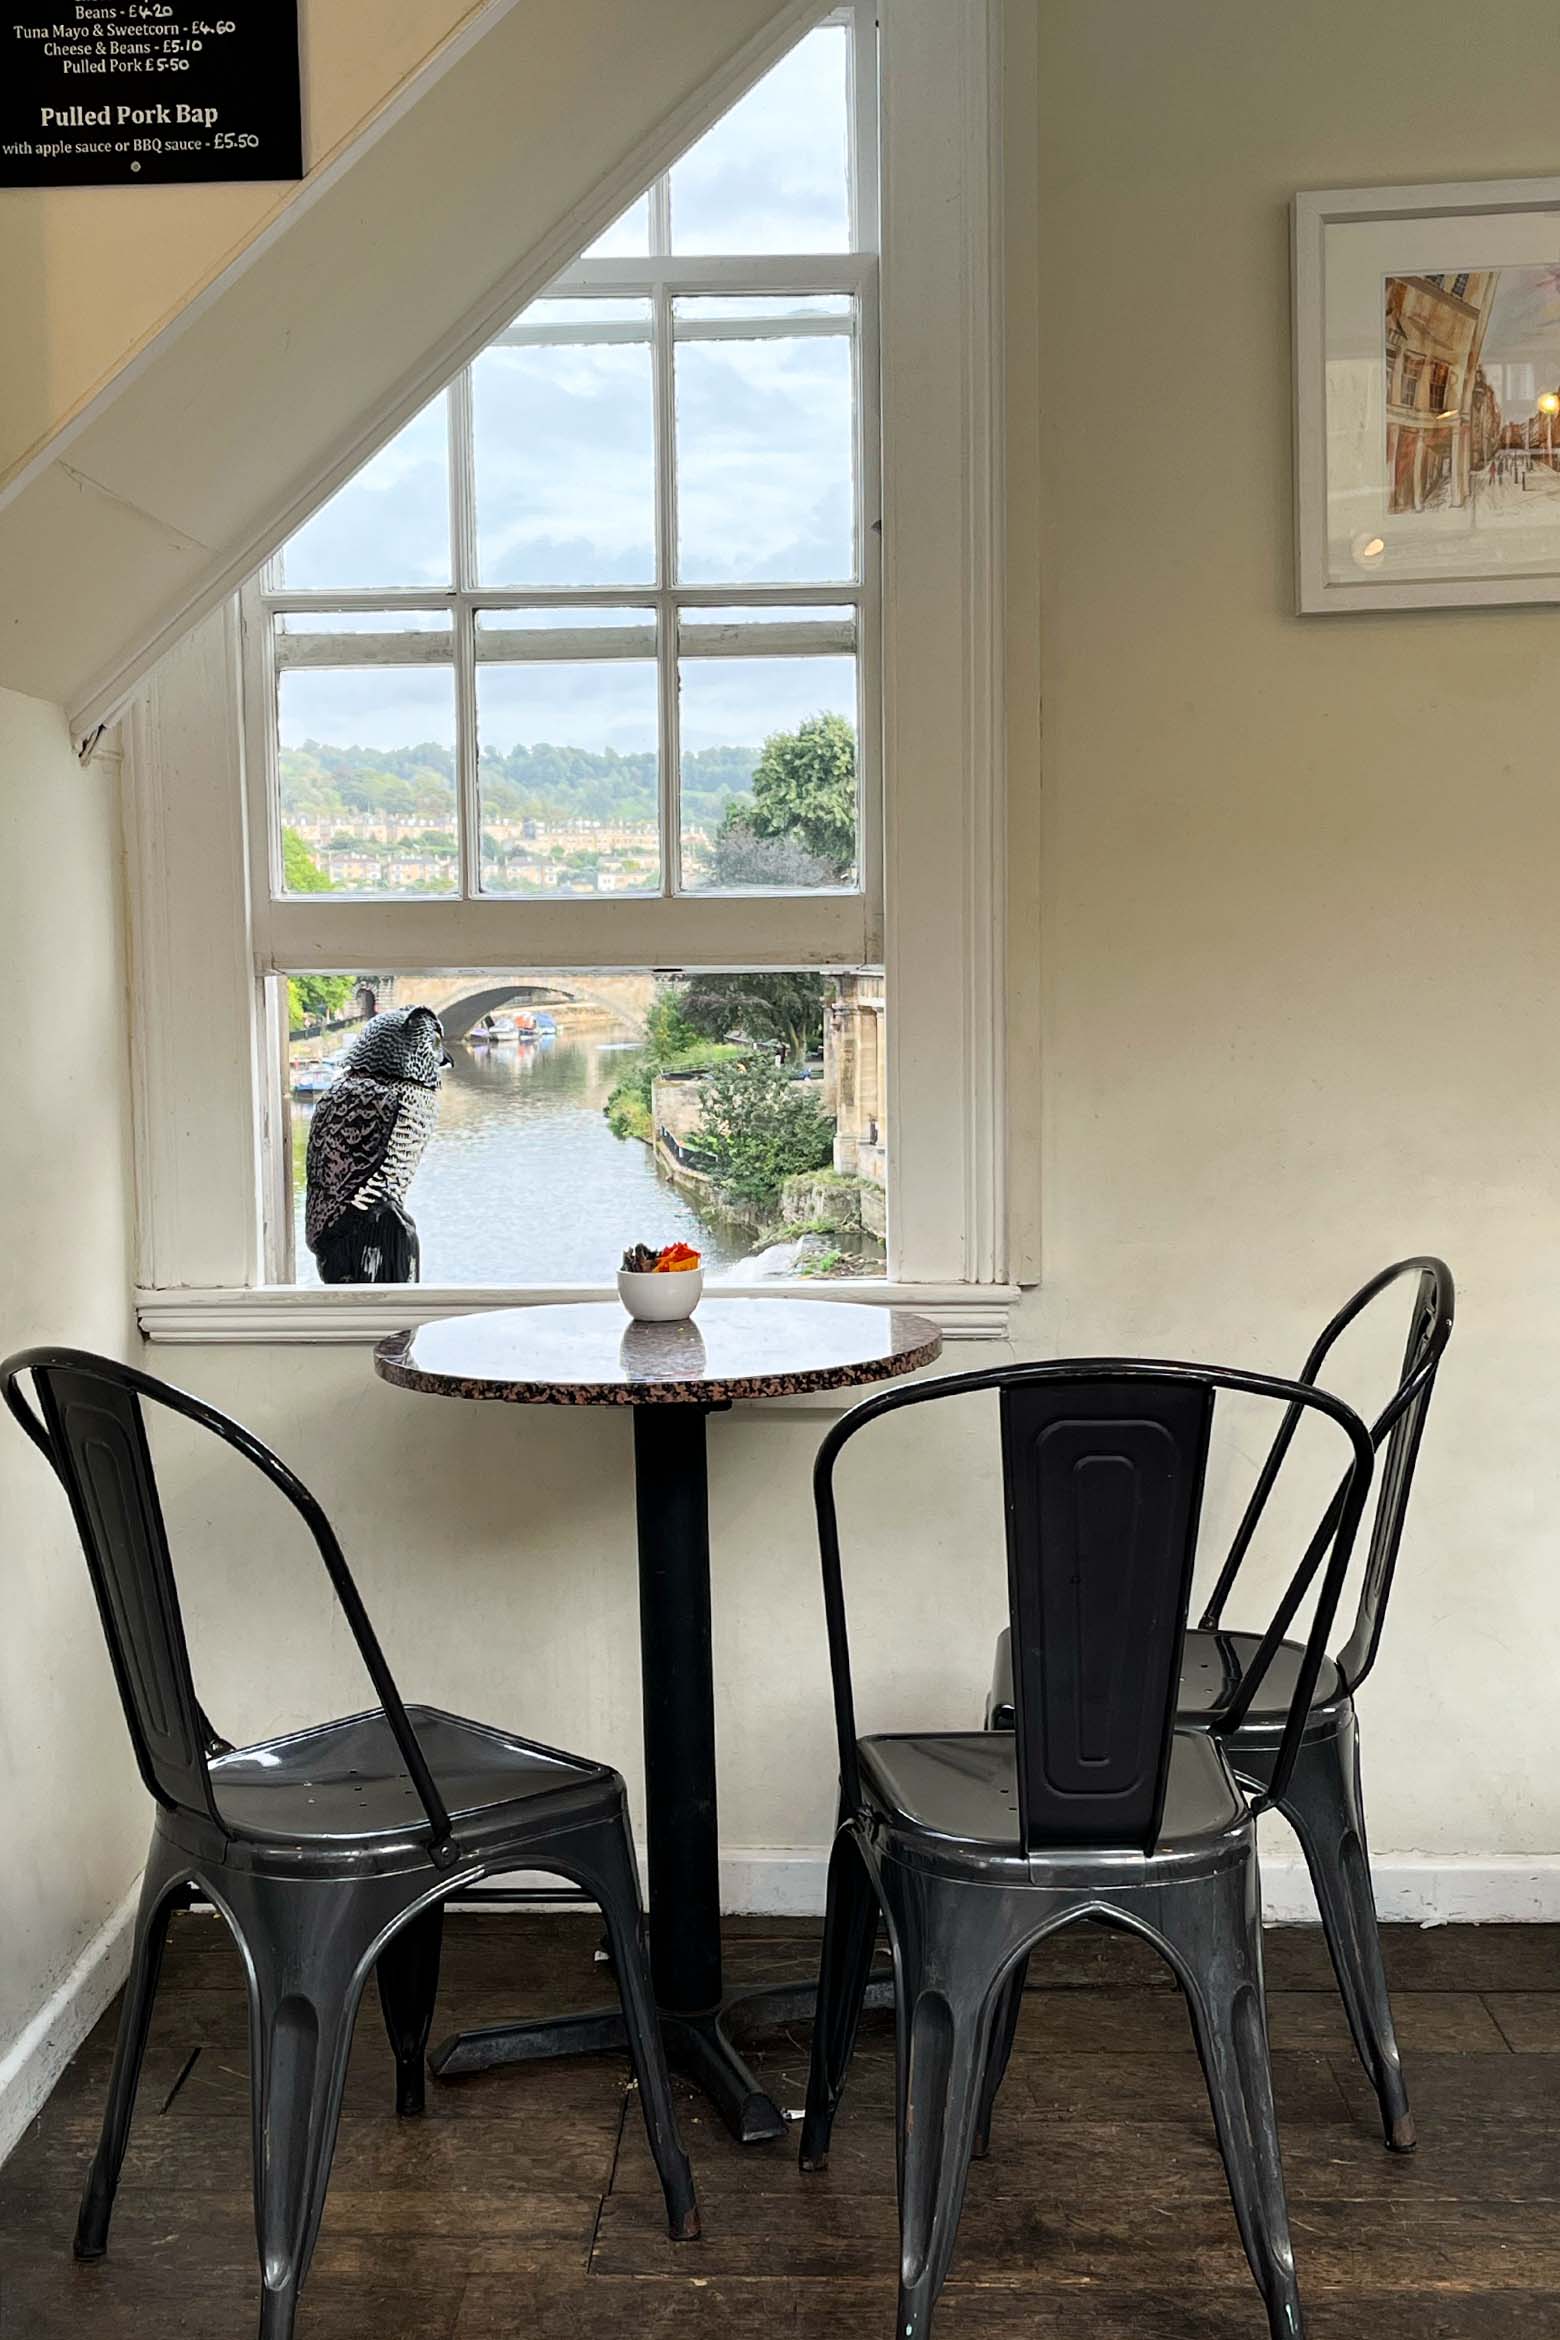 Bath-Highlights: Bridge Coffee Shop auf der Pulteney Bridge